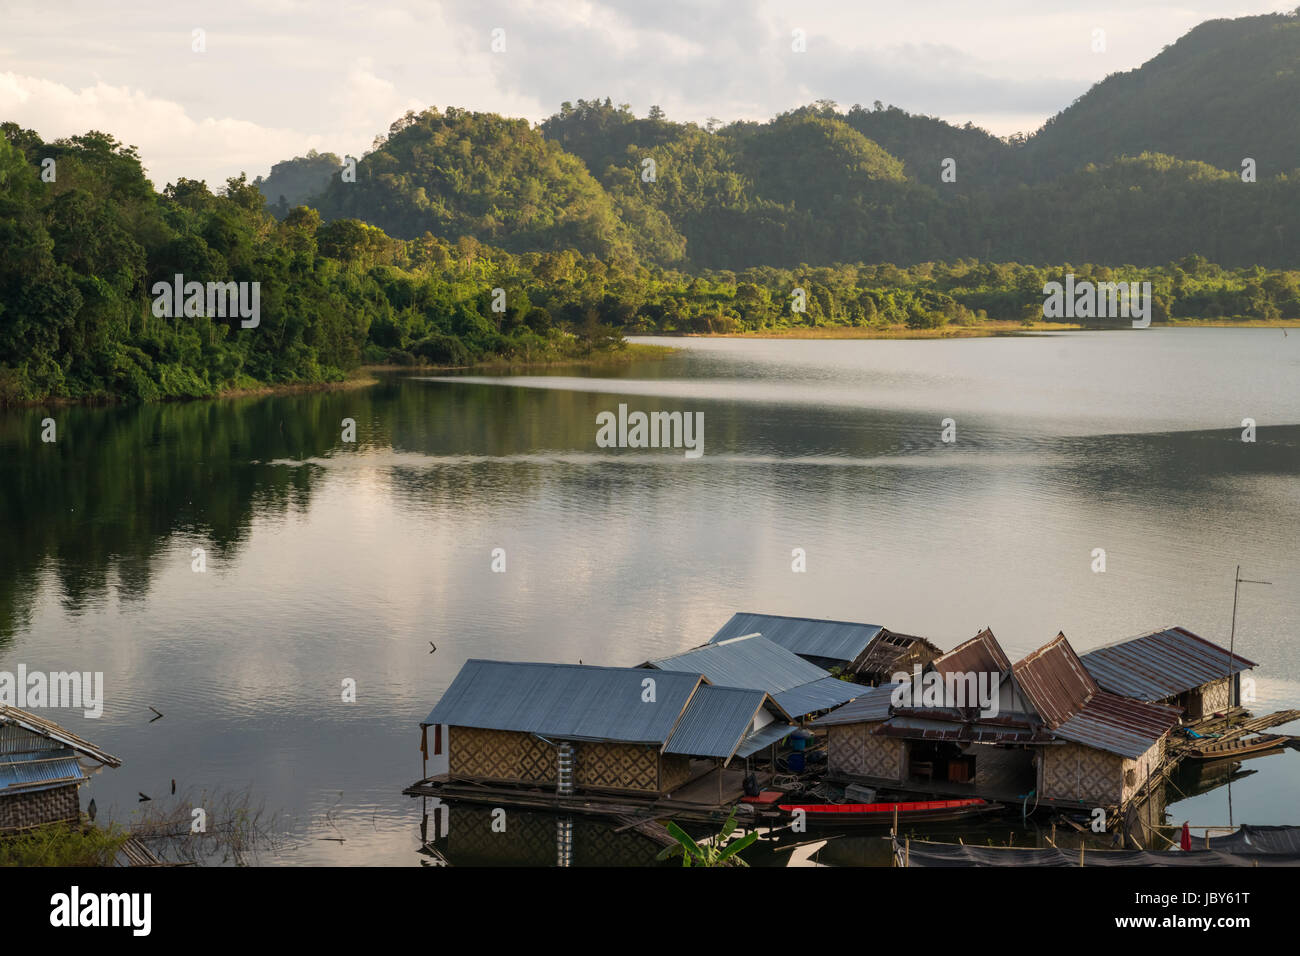 Vivere le case galleggianti in Khao Laem lago vicino la città tailandesi Sangkhla Buri al tramonto. Circondato da boschi e il lago di questo rende un idilliaco che circonda. Foto Stock